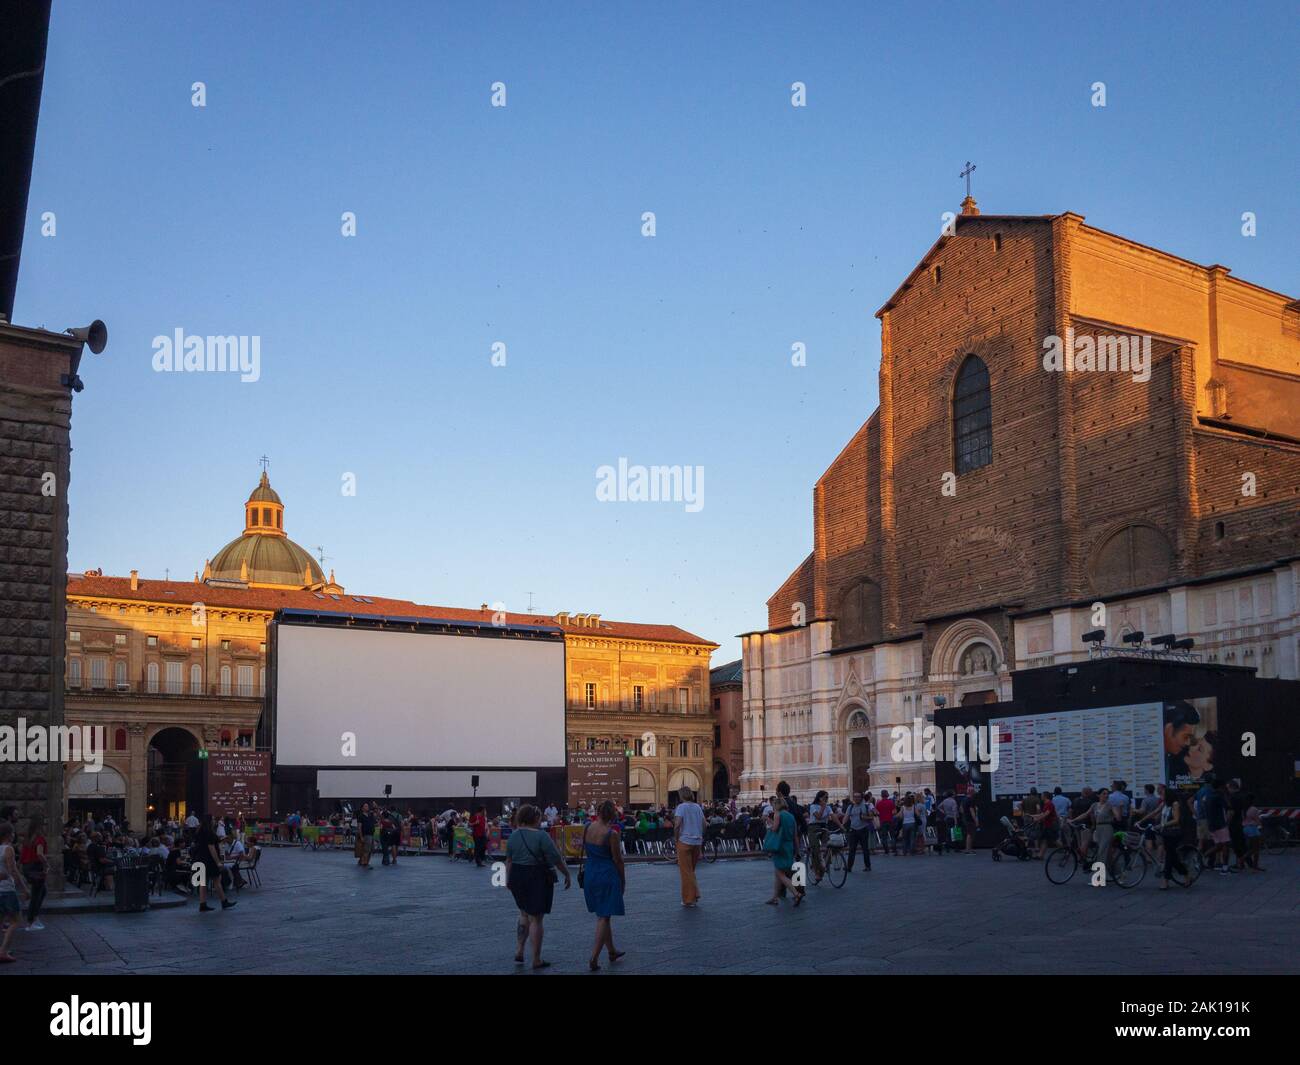 Bolonia, Italia - Junio 26, 2019: Piazza Maggiore y San Petronio iglesia con gran pantalla de cine al aire libre festival "Il Cinema ritrovato" Foto de stock